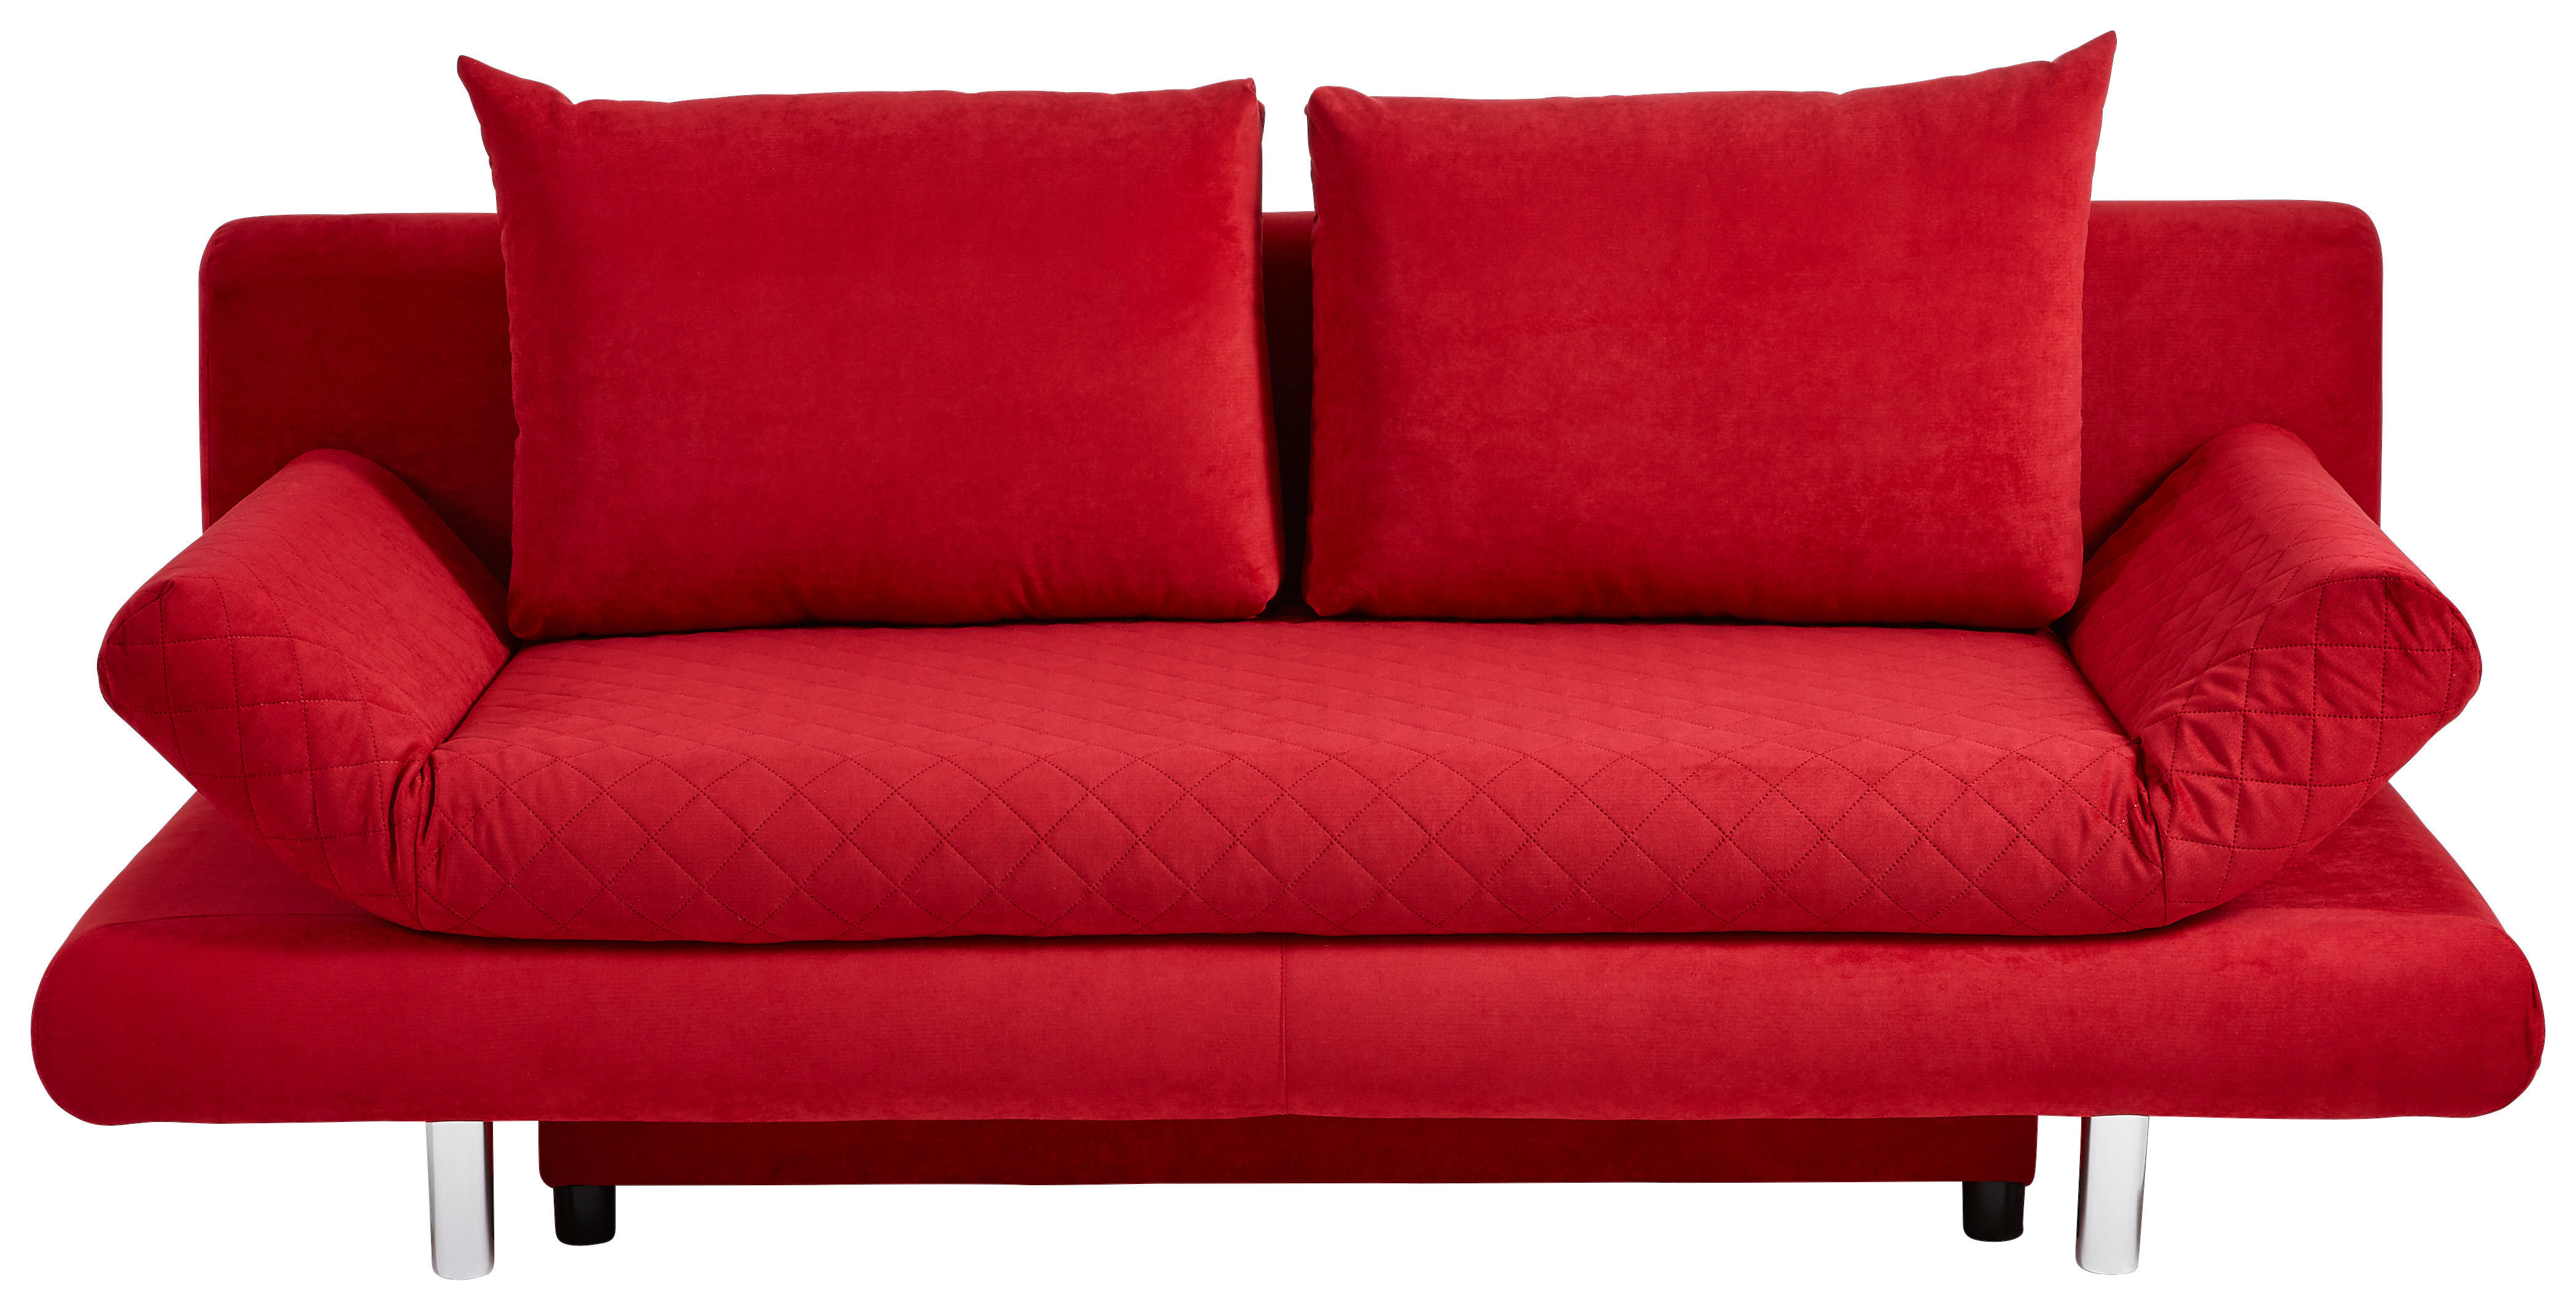 ROZKLADACIA POHOVKA, textil, červená - chrómová/červená, Design, textil (194/73/91cm) - Xora